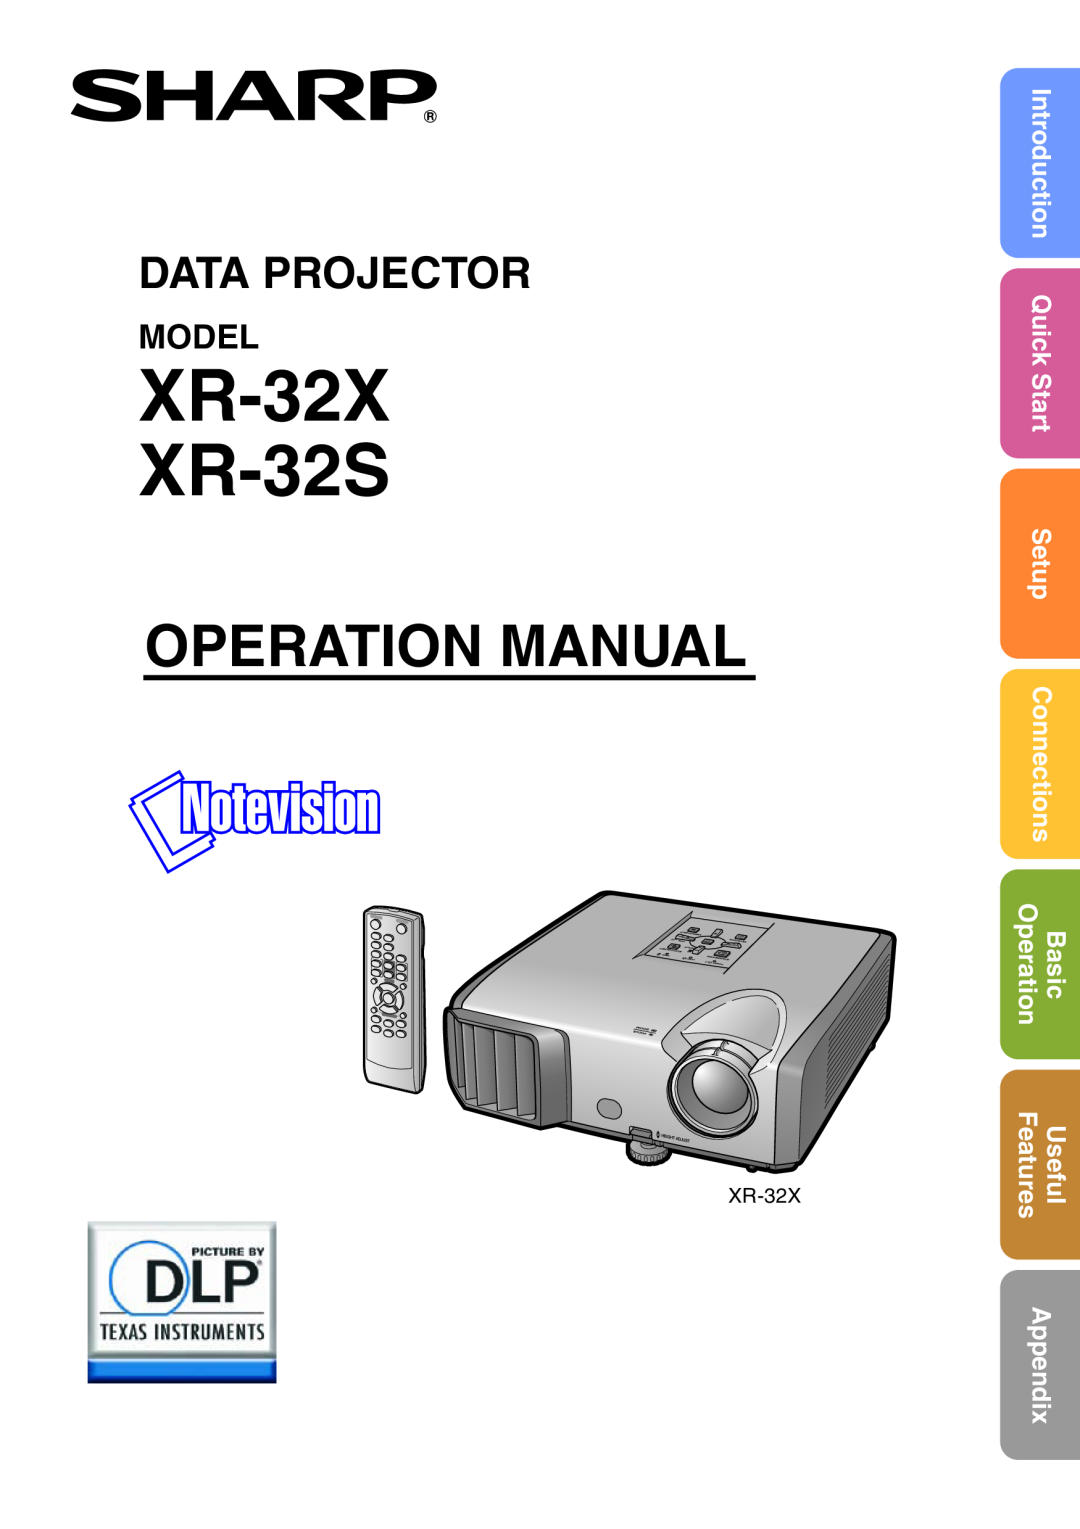 Sharp quick start XR-32X XR-32S, Operation Manual, Data Projector, Model, Setup, Basic, Features, Appendix, QuickStart 